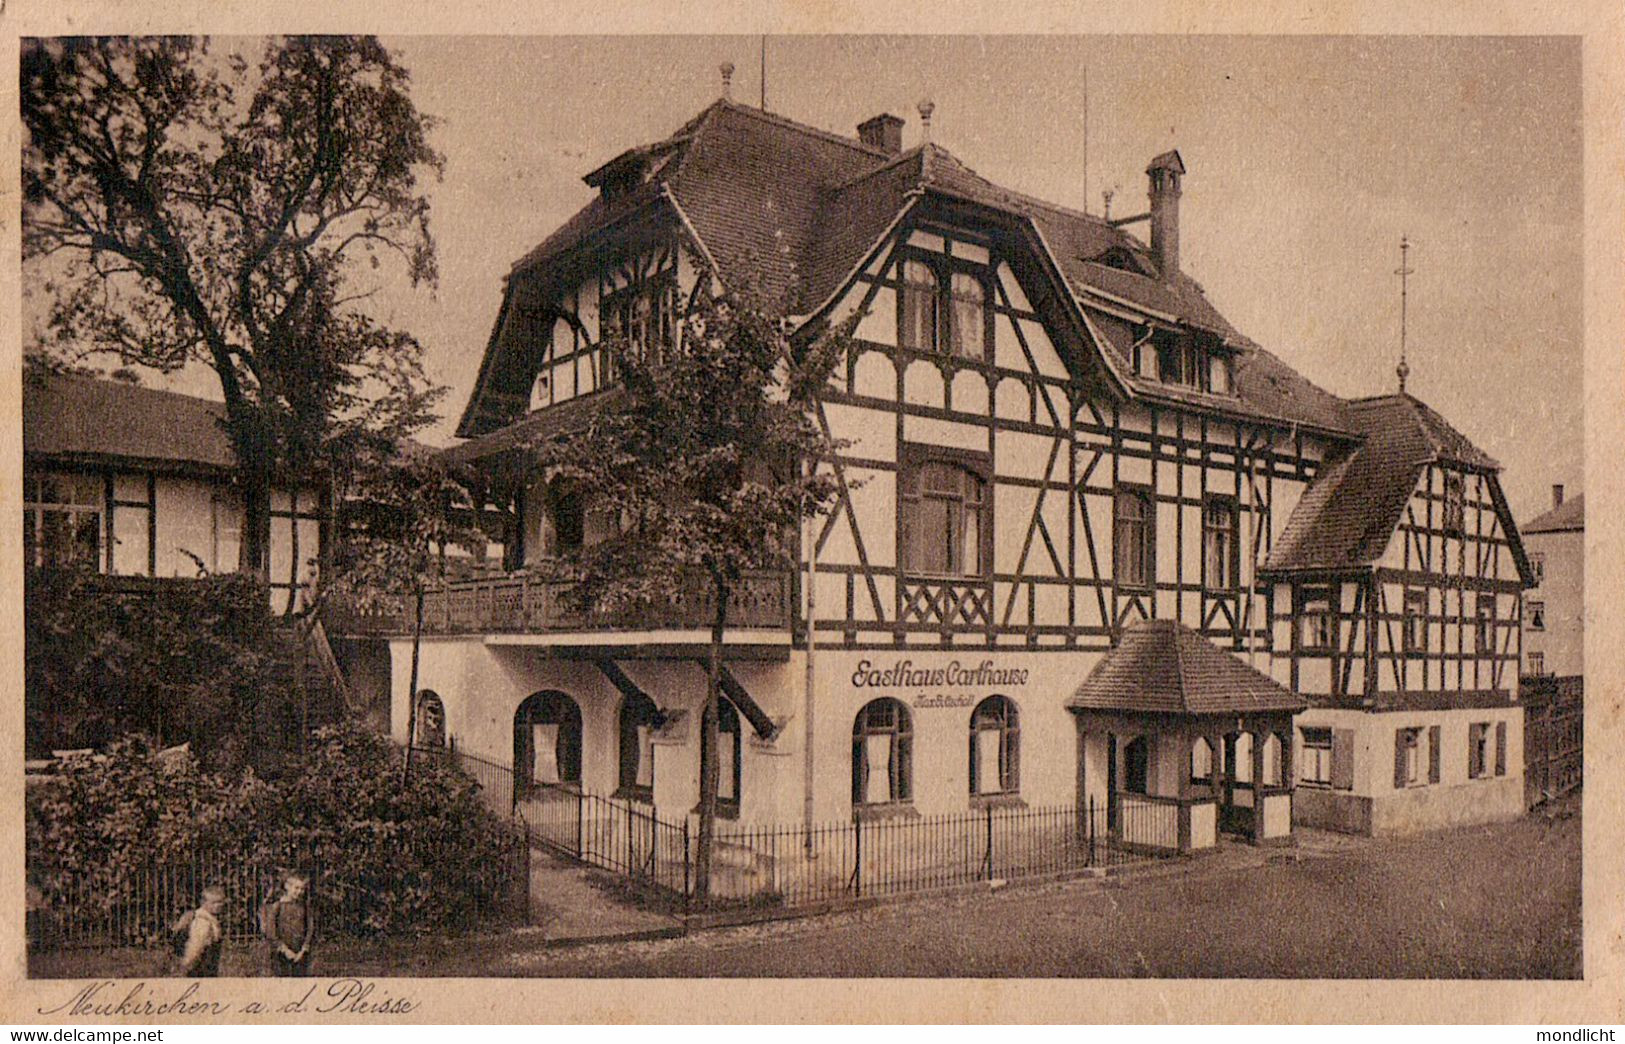 Neukirchen An Der Pleisse. Gasthaus Carthause, Besitzer Joh. Max Gottschall. - Crimmitschau